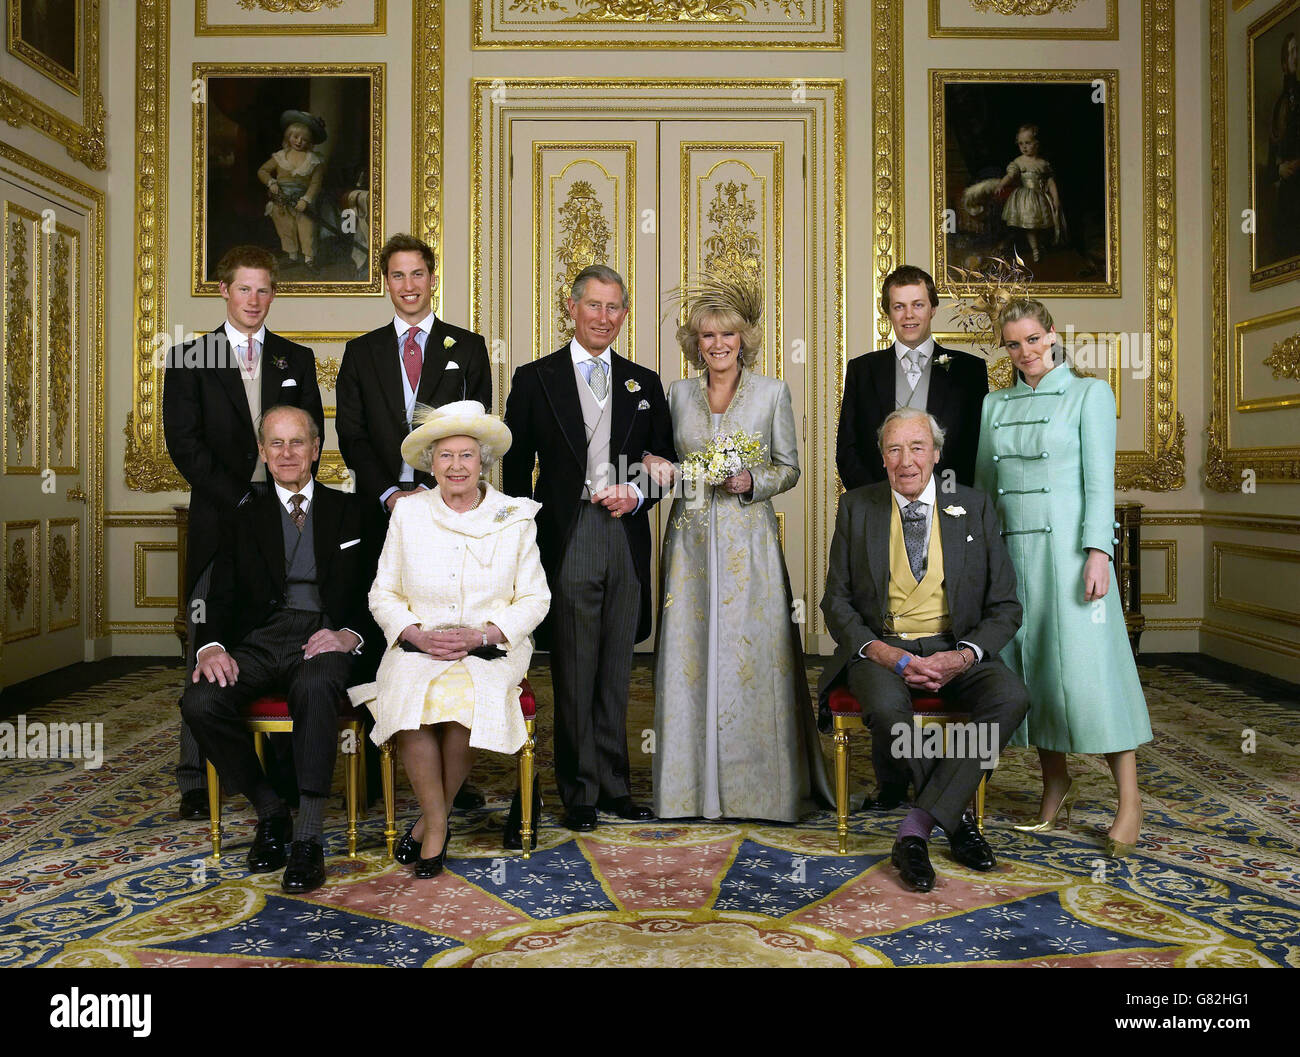 royal-wedding-marriage-of-prince-charles-and-camilla-parker-bowles-G82HG1.jpg